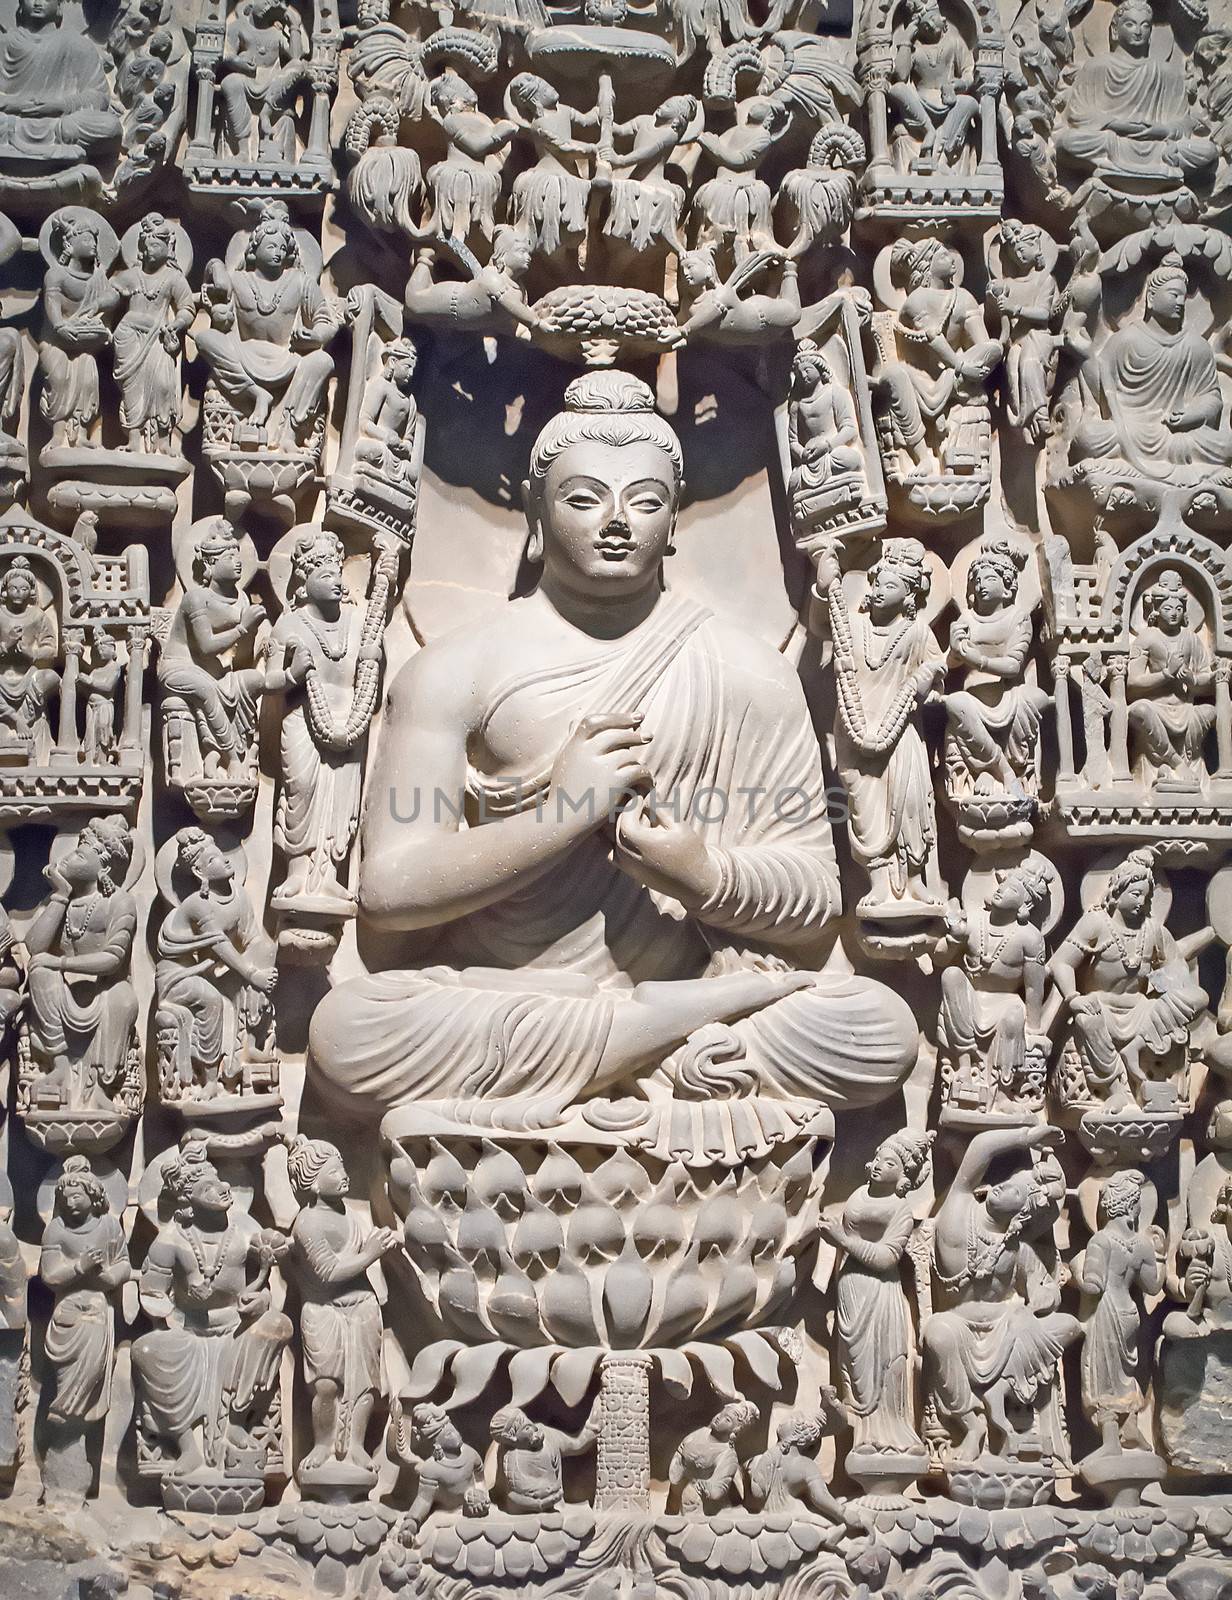 Buddha image by swisshippo